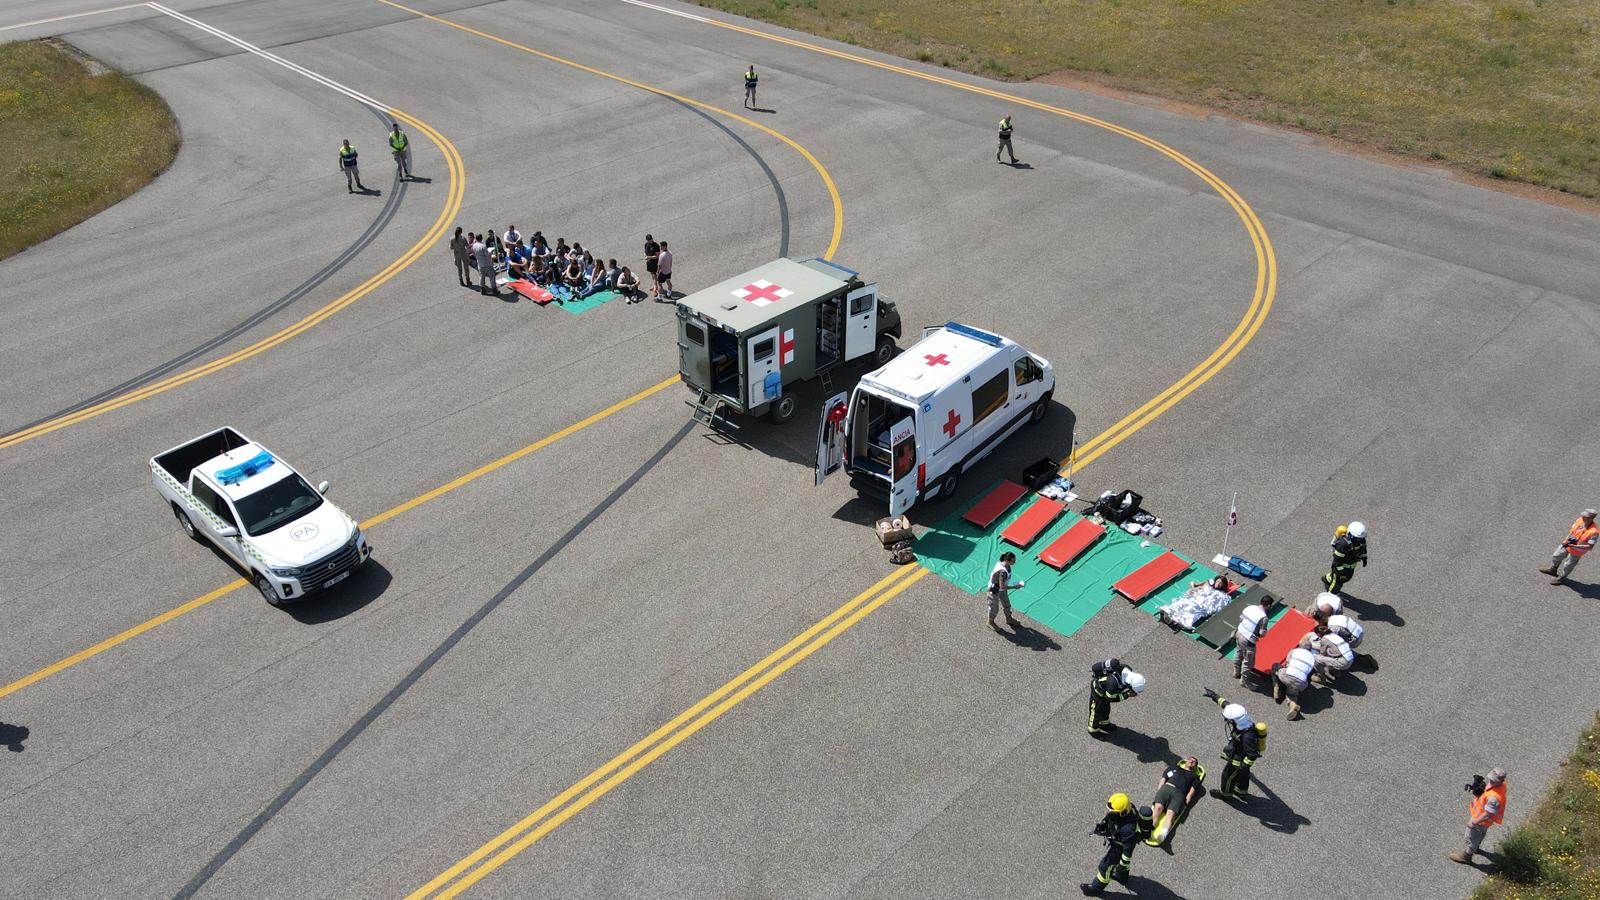 Simulacro de accidente en el Aeropuerto Militar de León. | L.N.C.